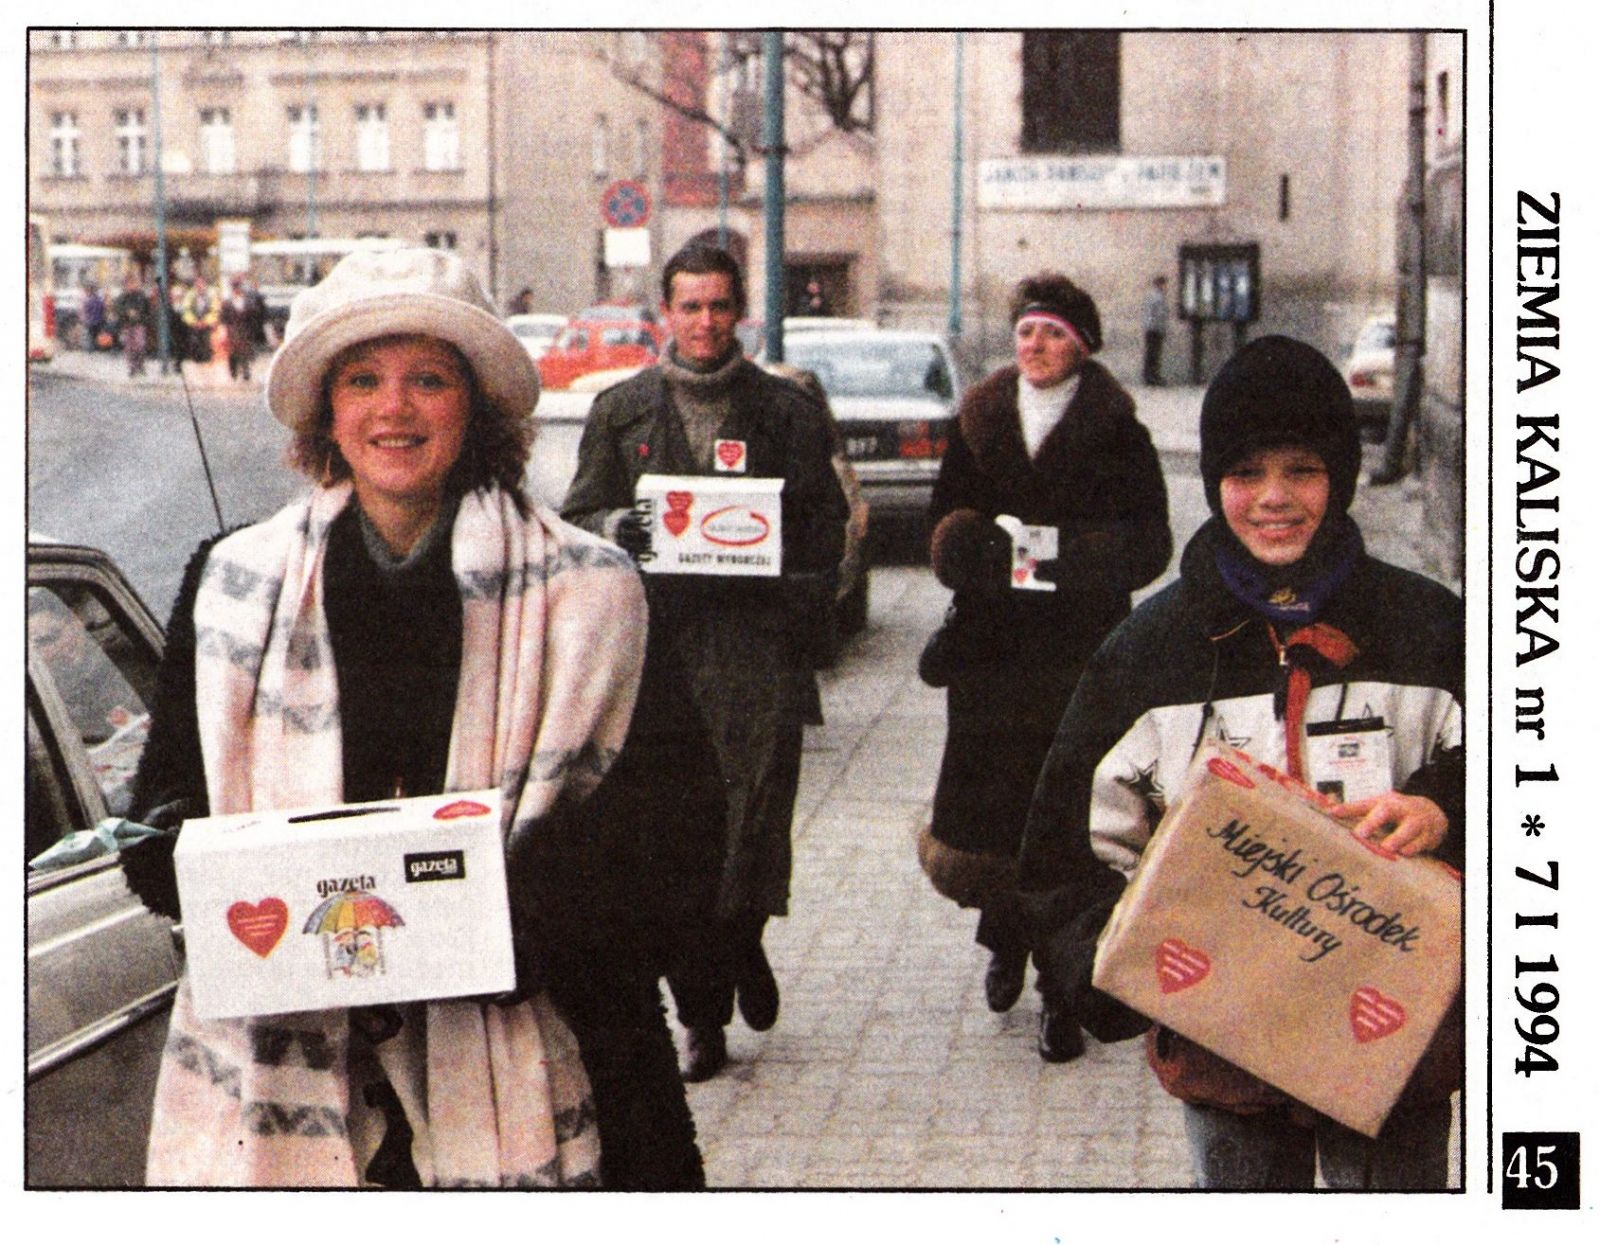 Pierwszy od prawej: Roman podczas 2. Finału WOŚP w Kaliszu. Fot.: Fotoreportaż Stanisława Szewczyka, gazeta Ziemia kaliska, 1994 